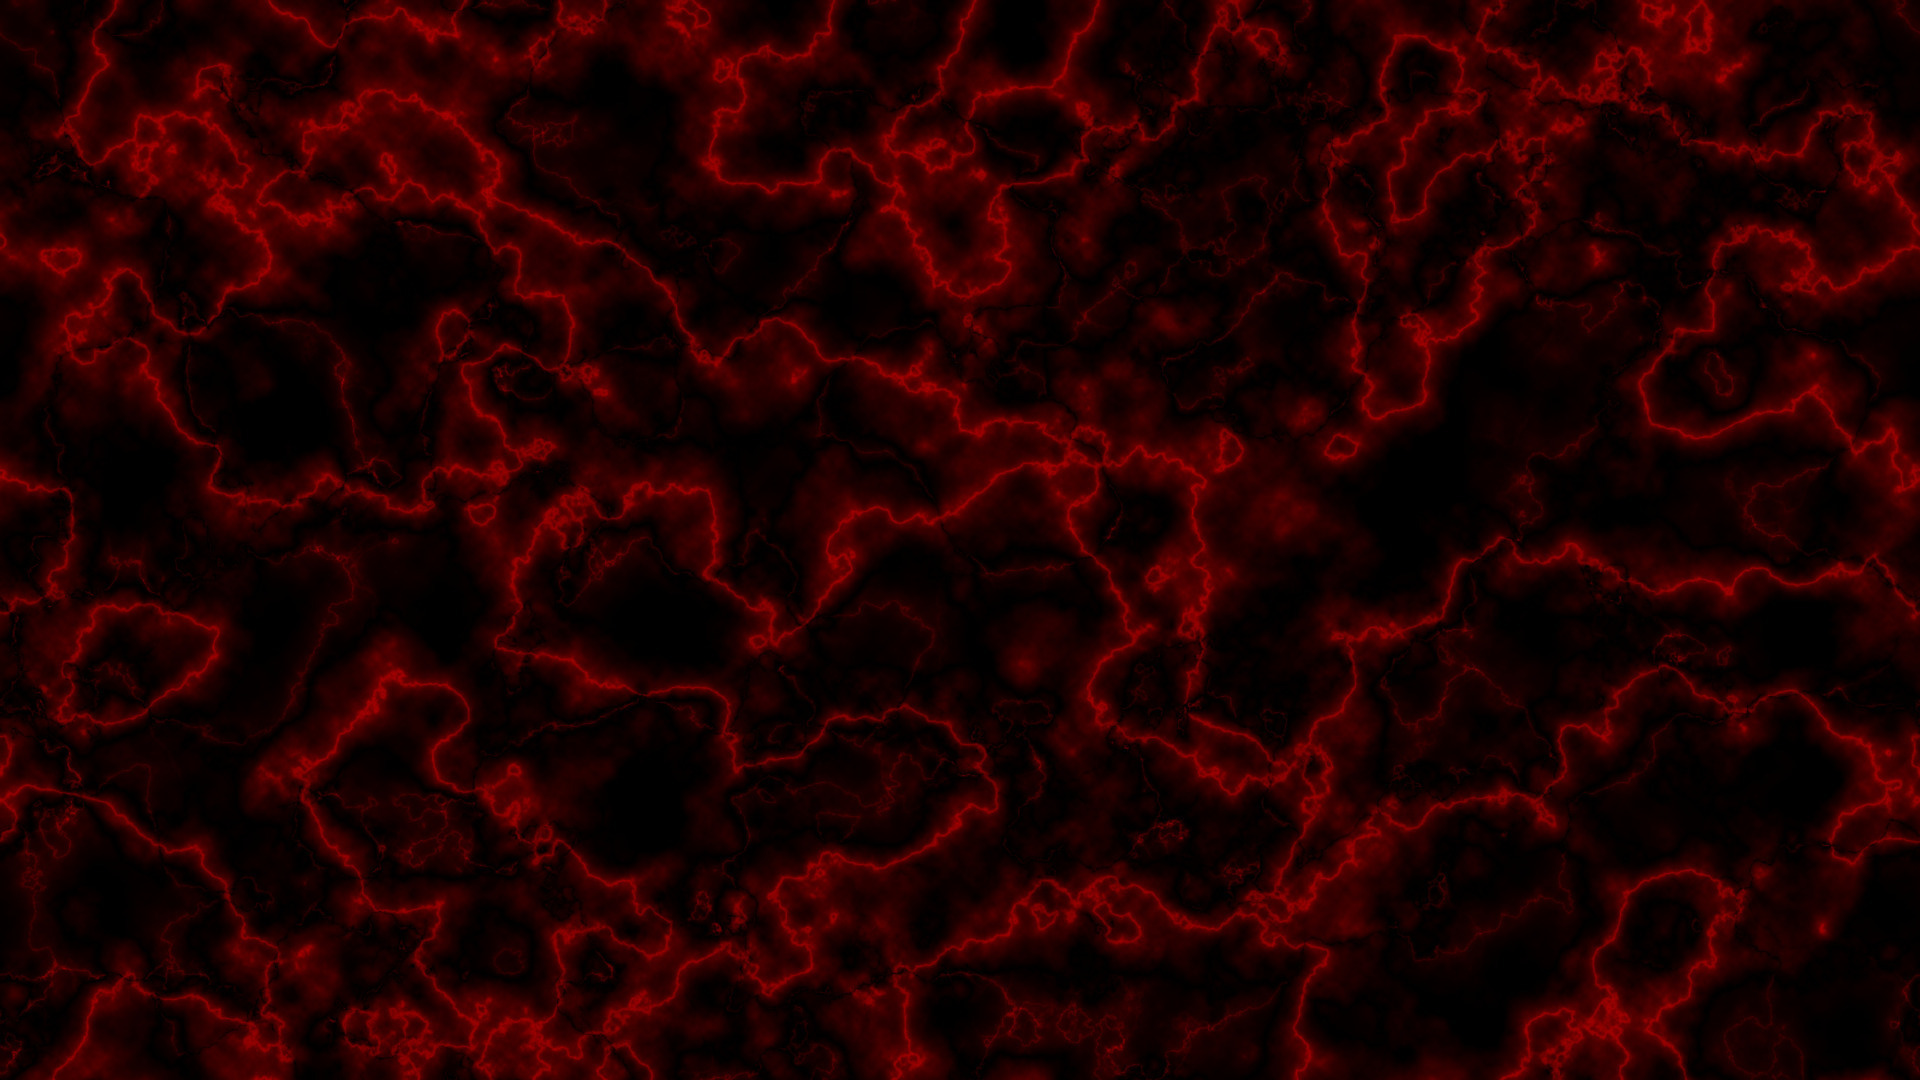 Hãy chiêm ngưỡng mẫu nền Marble đen đỏ hoa văn đầy tinh xảo và phức tạp, hài hòa giữa sự đối lập giữa màu sắc đen và đỏ. Mỗi chi tiết hoa văn được khắc trên một mảnh đá trông thực sự tuyệt vời và sẽ bắt đầu tạo cảm hứng cho bạn.